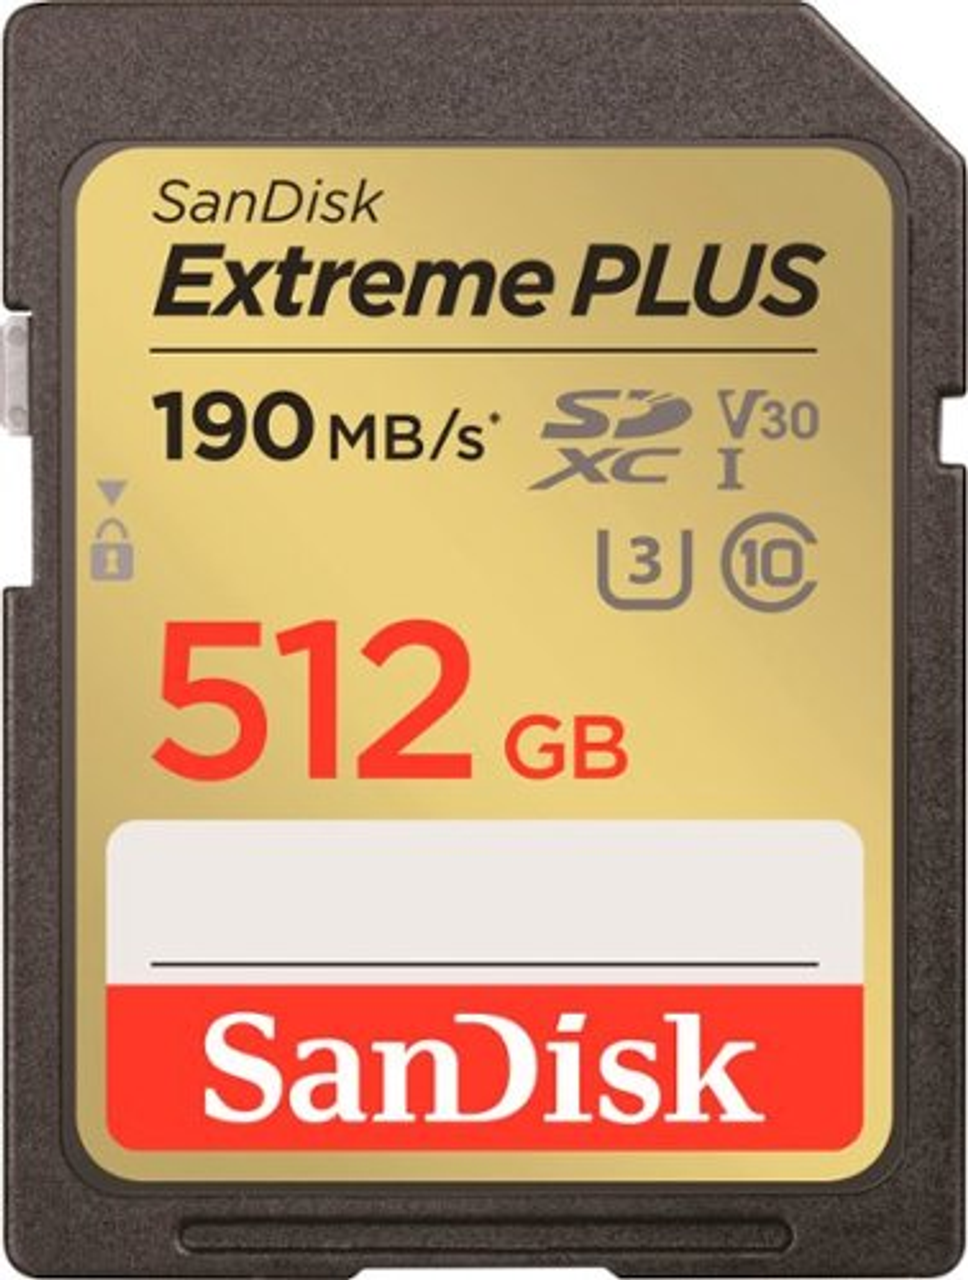 SanDisk - Extreme PLUS 512GB SDHC/SDXC UHS-I Card